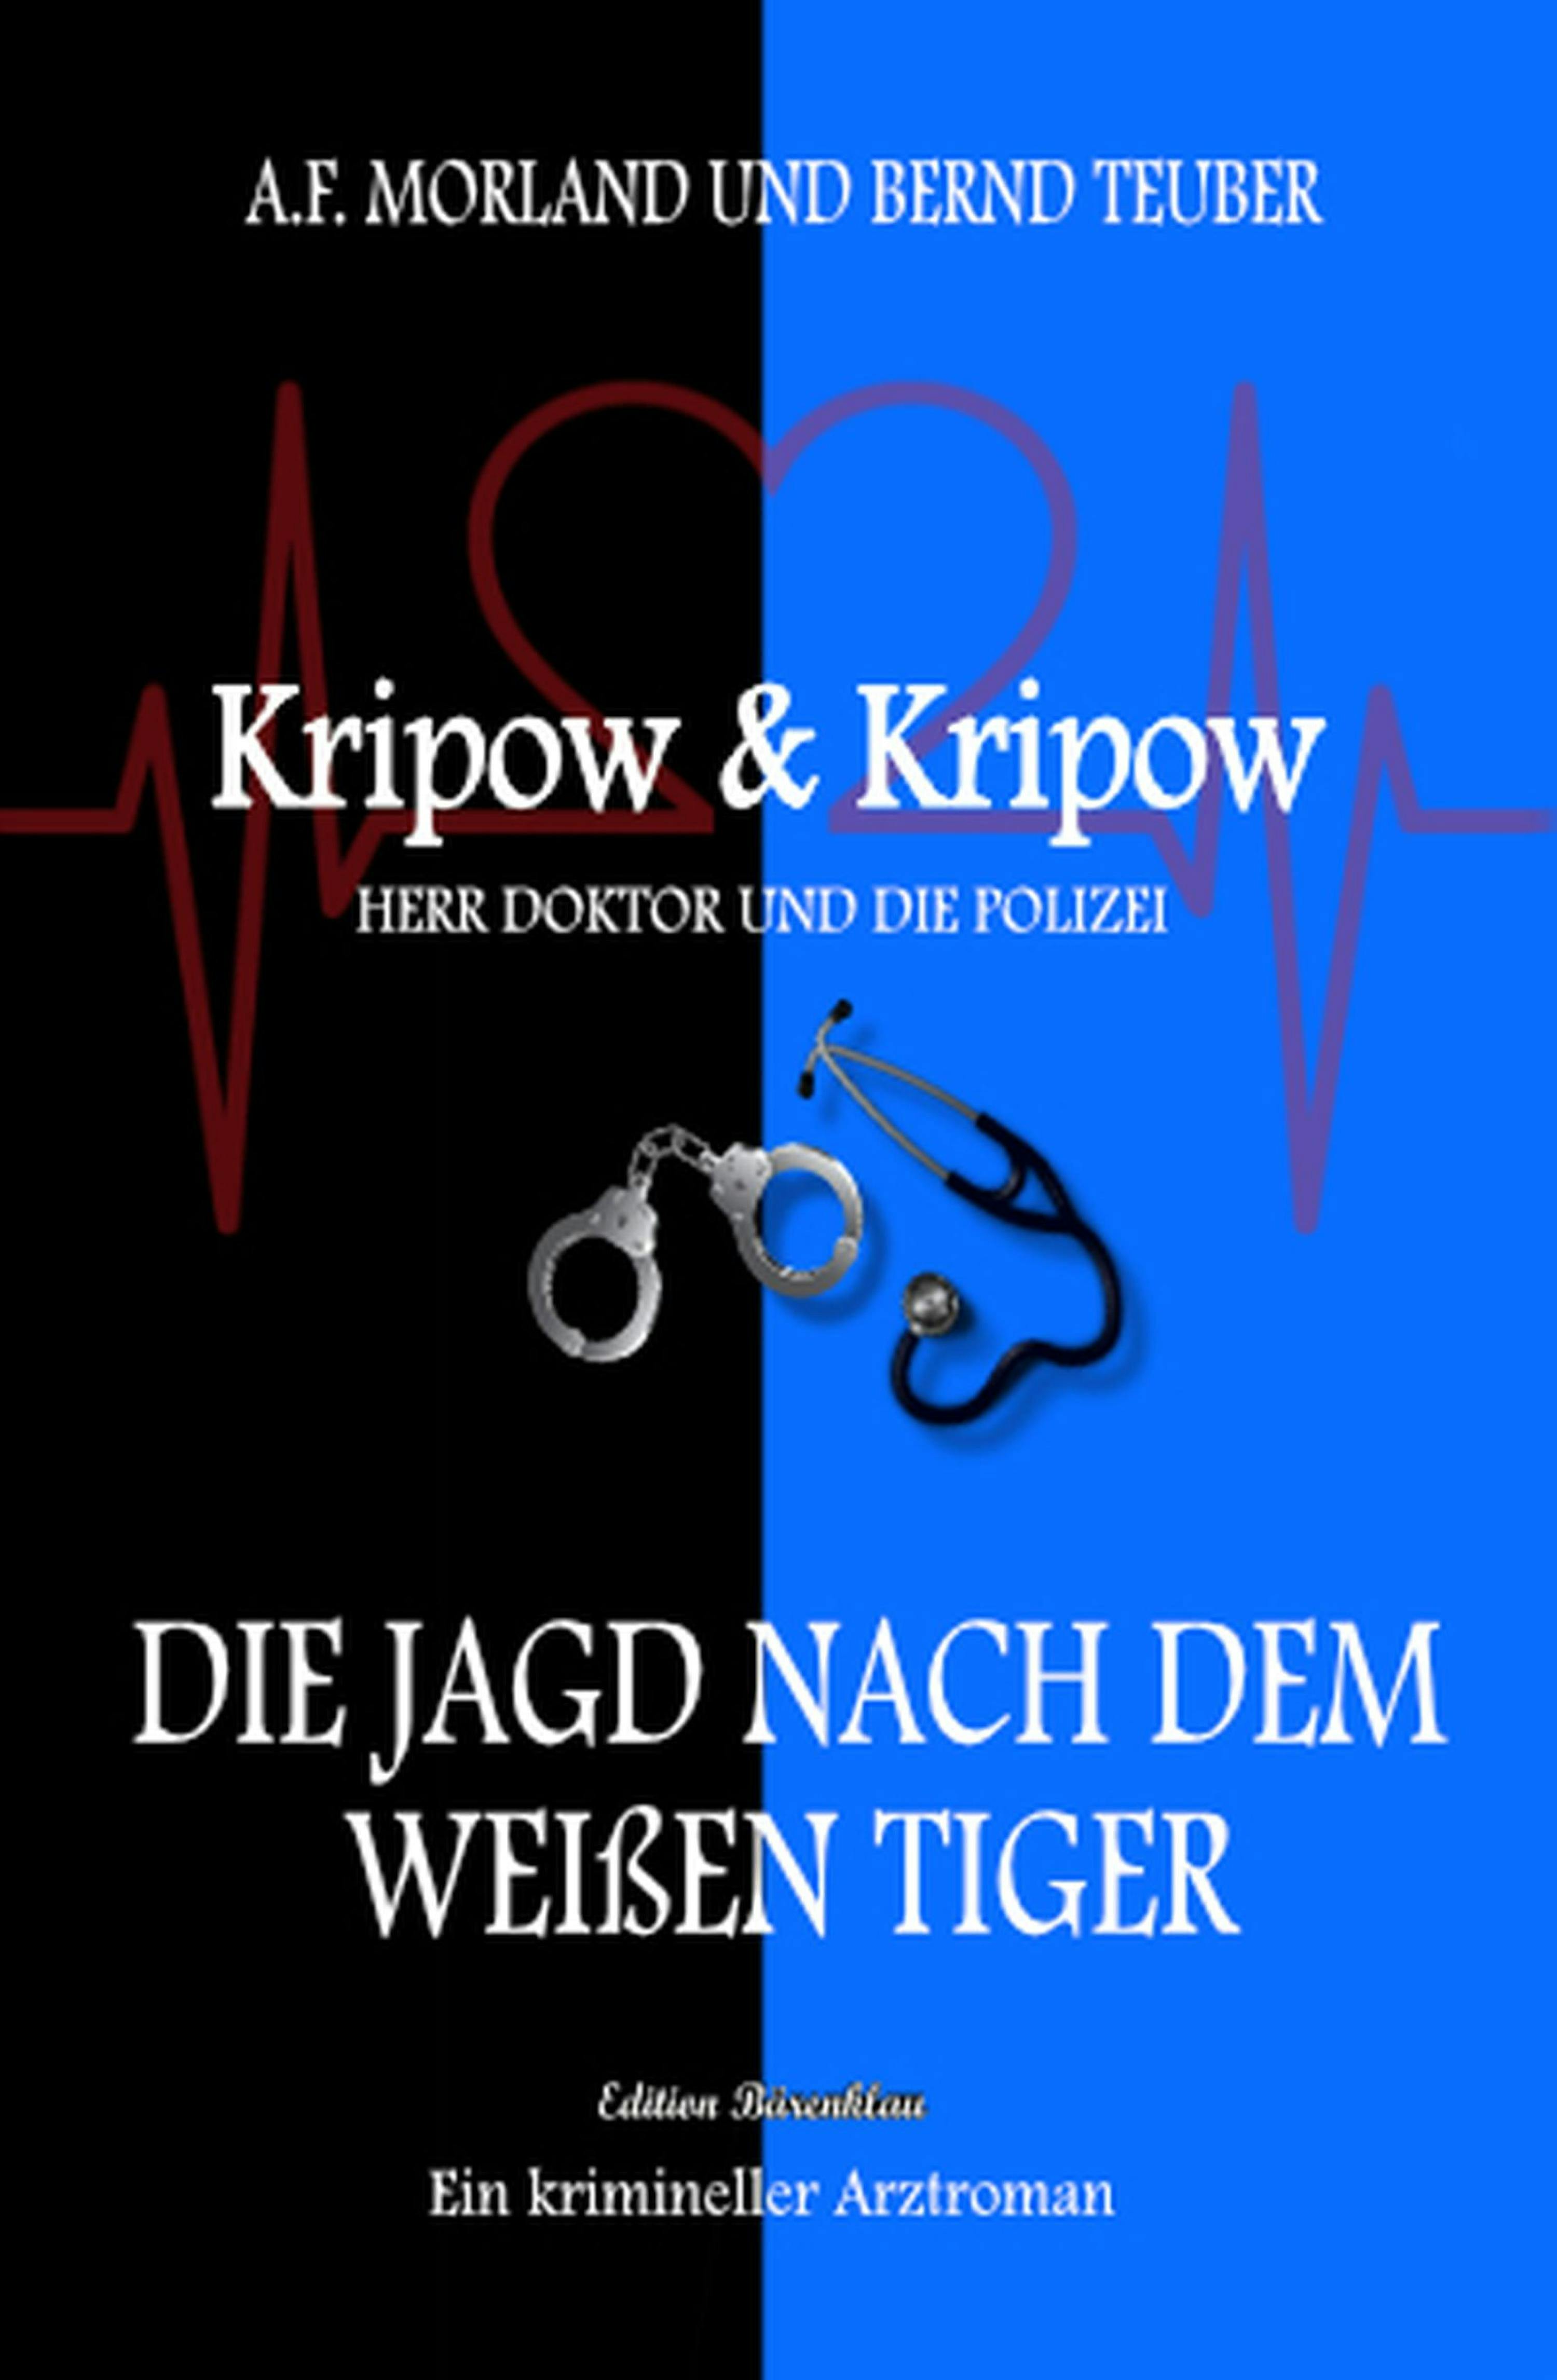 Die Jagd nach dem weißen Tiger: Kripow & Kripow - Herr Doktor und die Polizei - A. F. Morland, Bernd Teuber